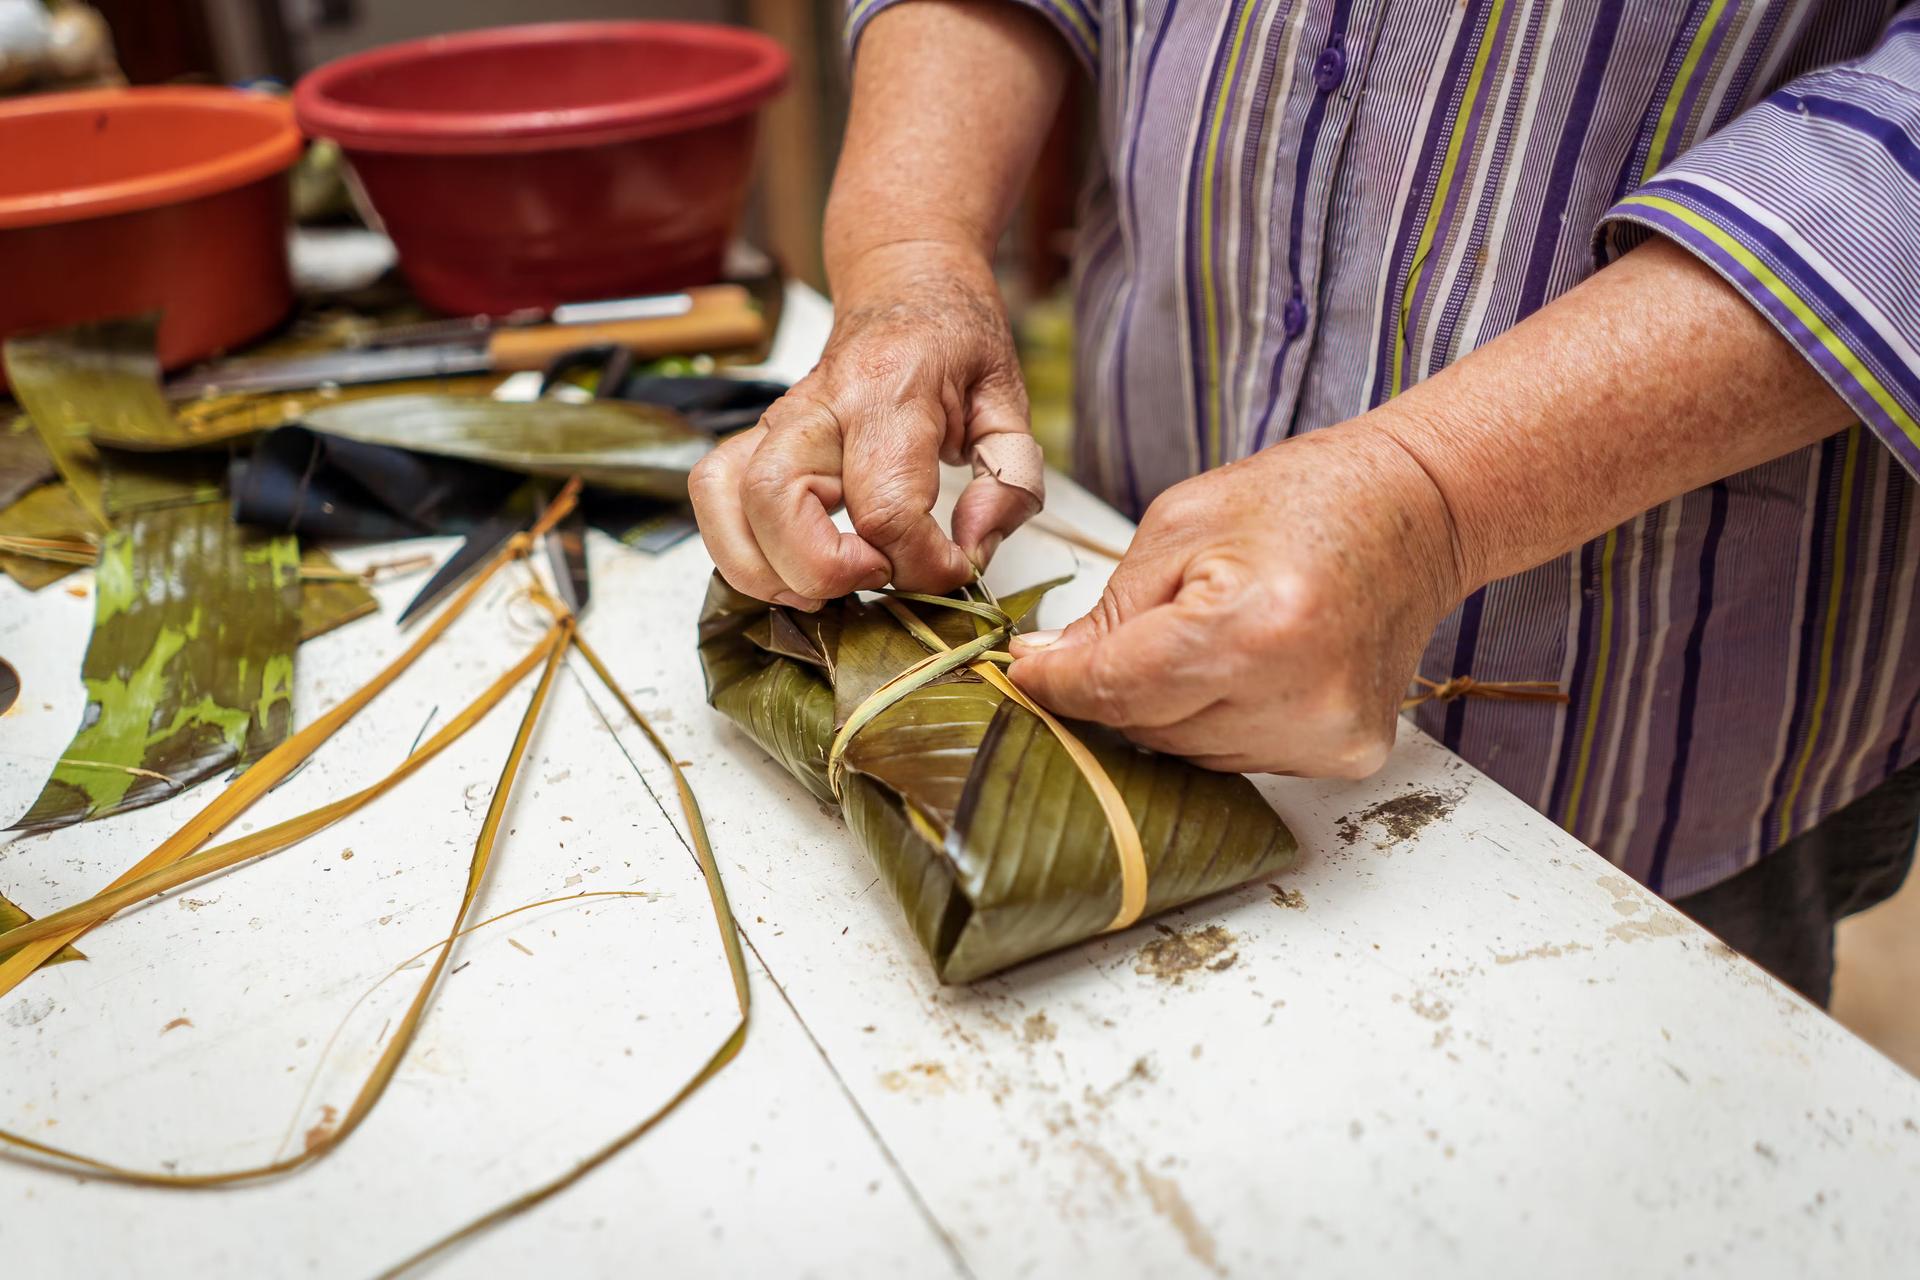 A shot of man hands as he works on handicrafts in Tegucigalpa, Honduras, Central America